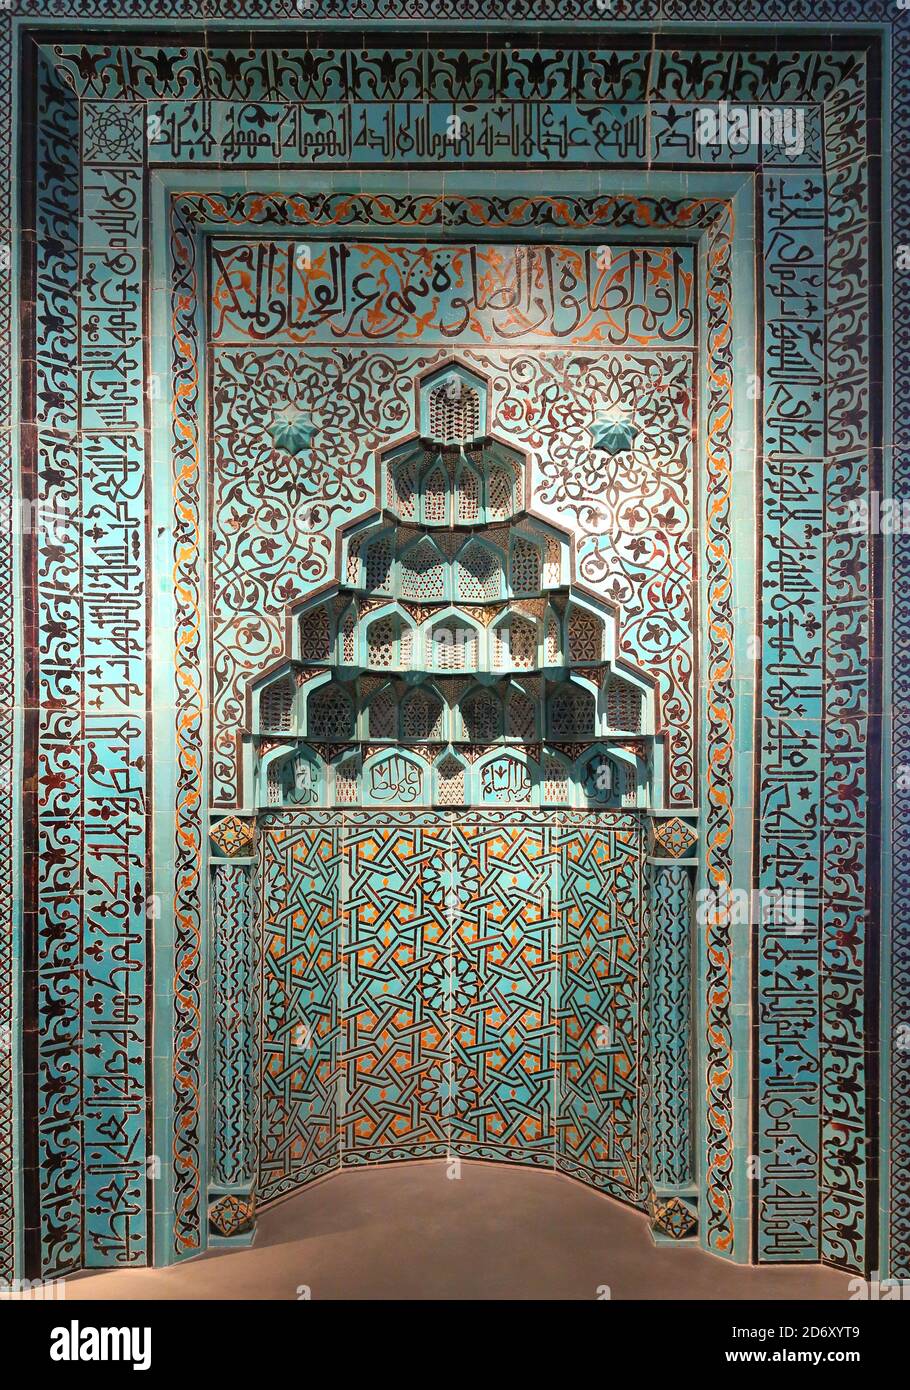 Mihrab du XIIIe siècle (niche de prière) de la mosquée Beyhekim, Konya, Turquie, exposé au musée de Pergamon, Berlin, Allemagne Banque D'Images